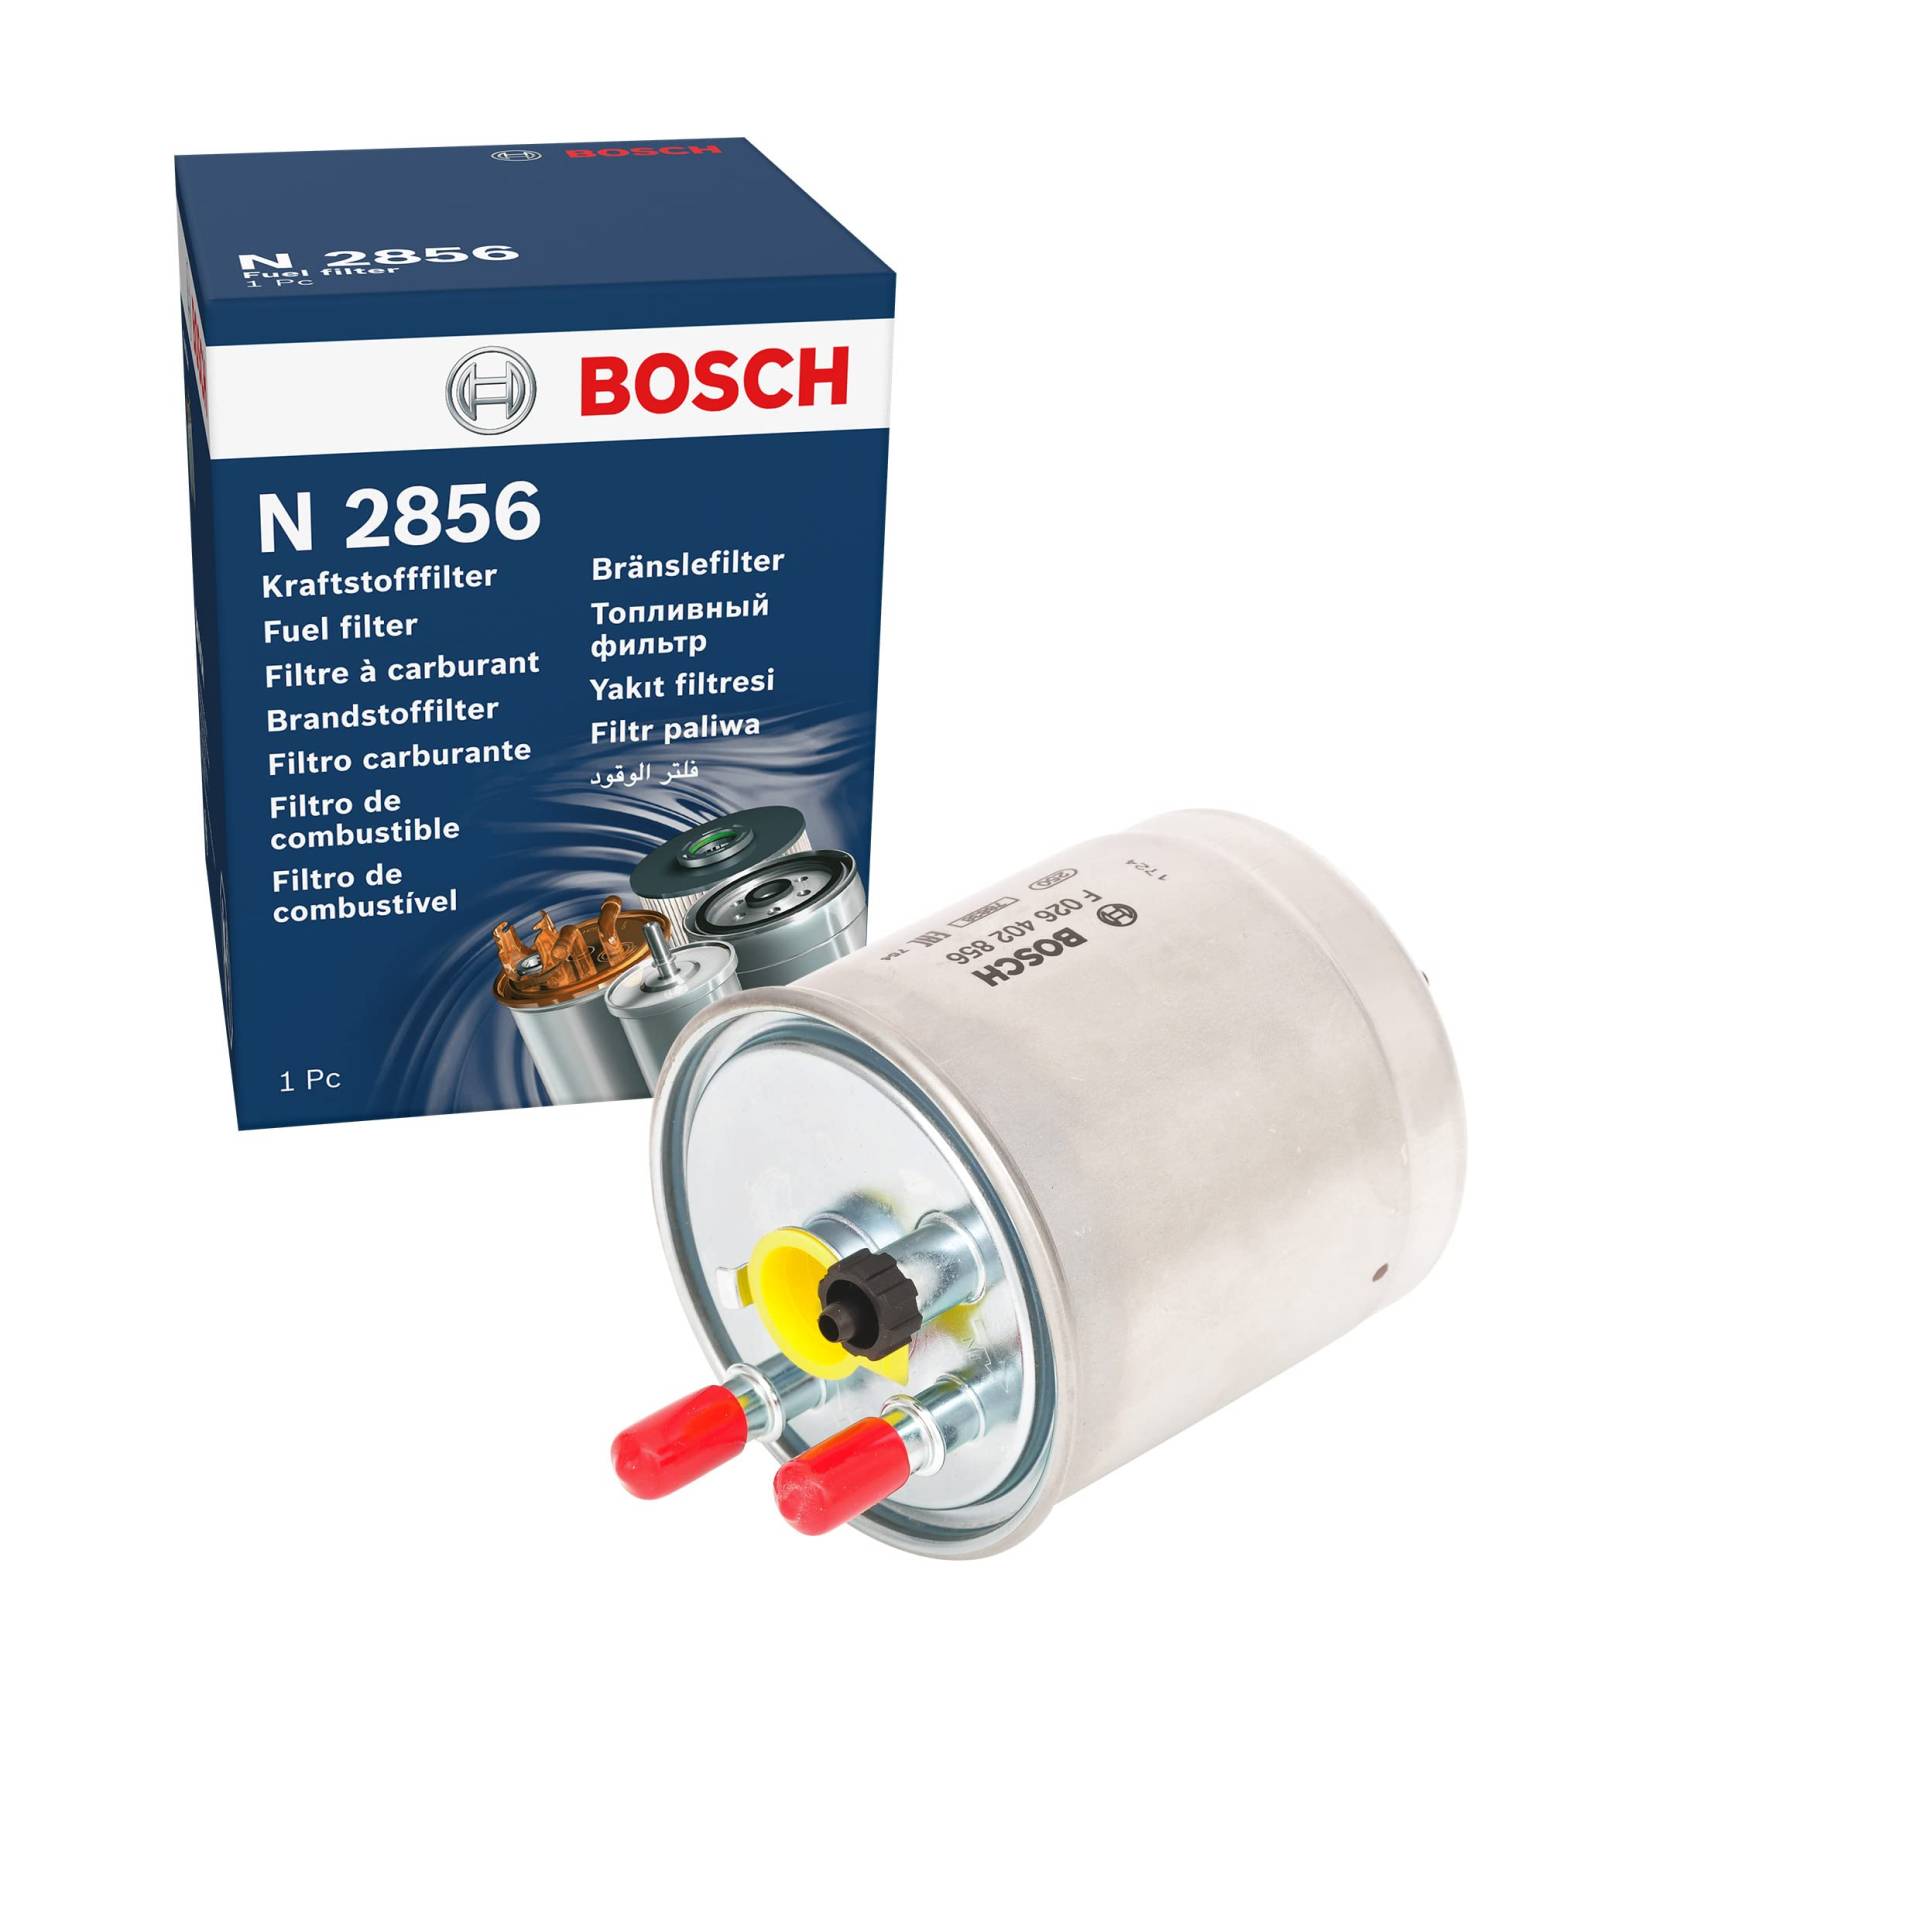 Bosch N2856 - Dieselfilter Auto von Bosch Automotive